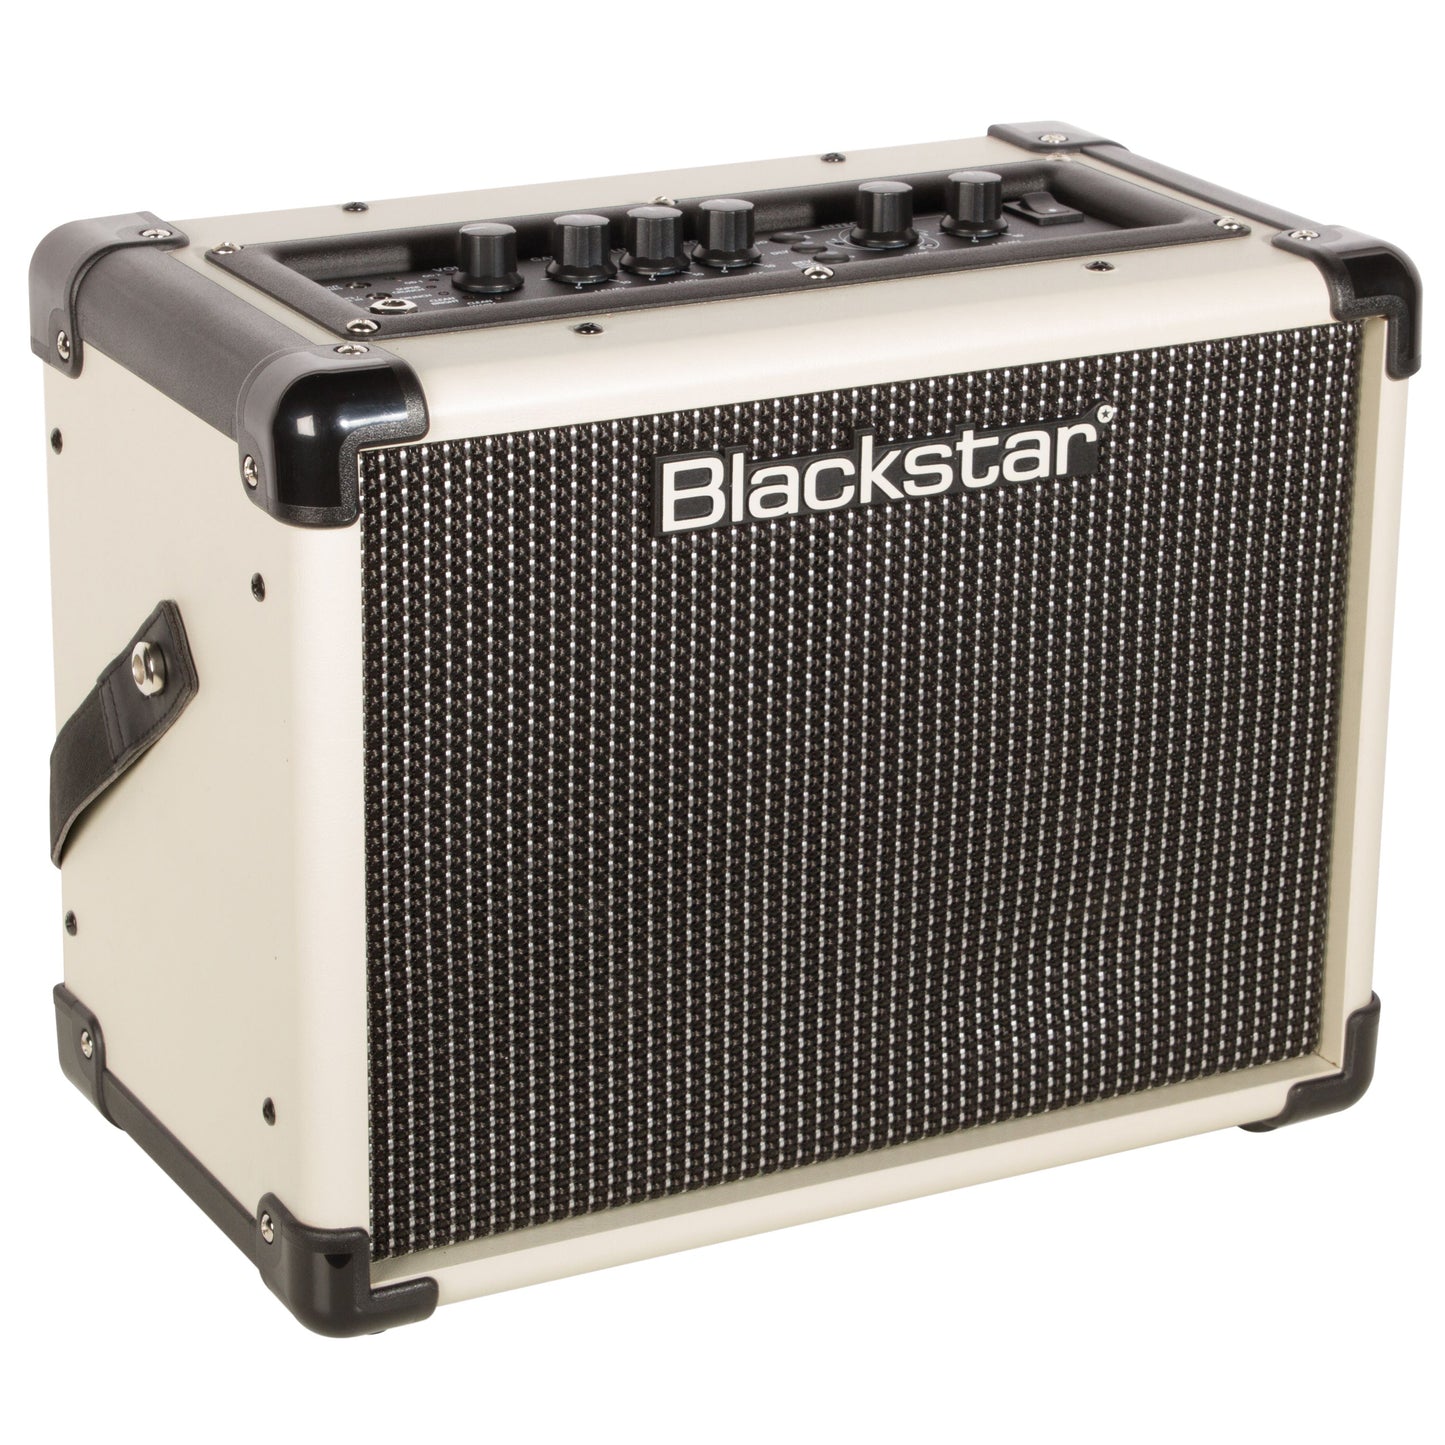 Blackstar Limited Edition Cream ID CORE Beam Super Wide Stereo 20-Watt Combo